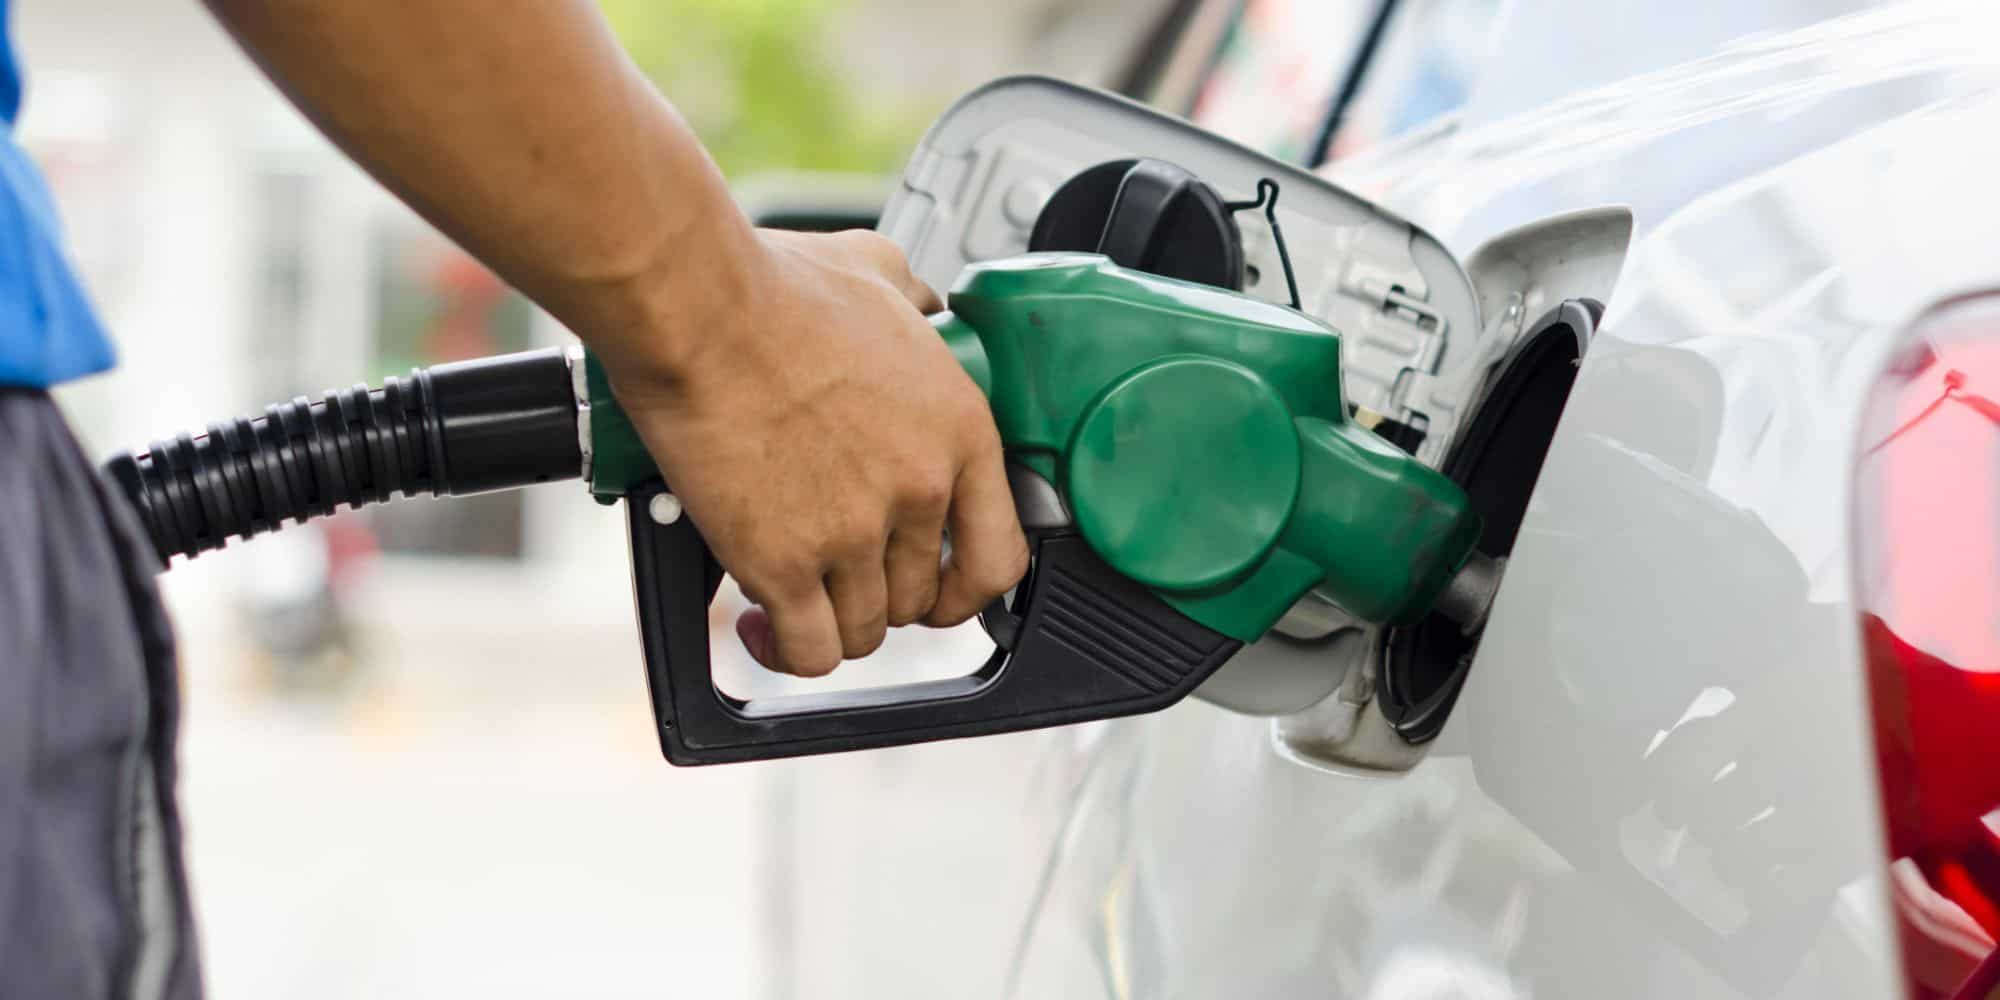 Gasolina extra o corriente, y cuál se utiliza más en cada ciudad